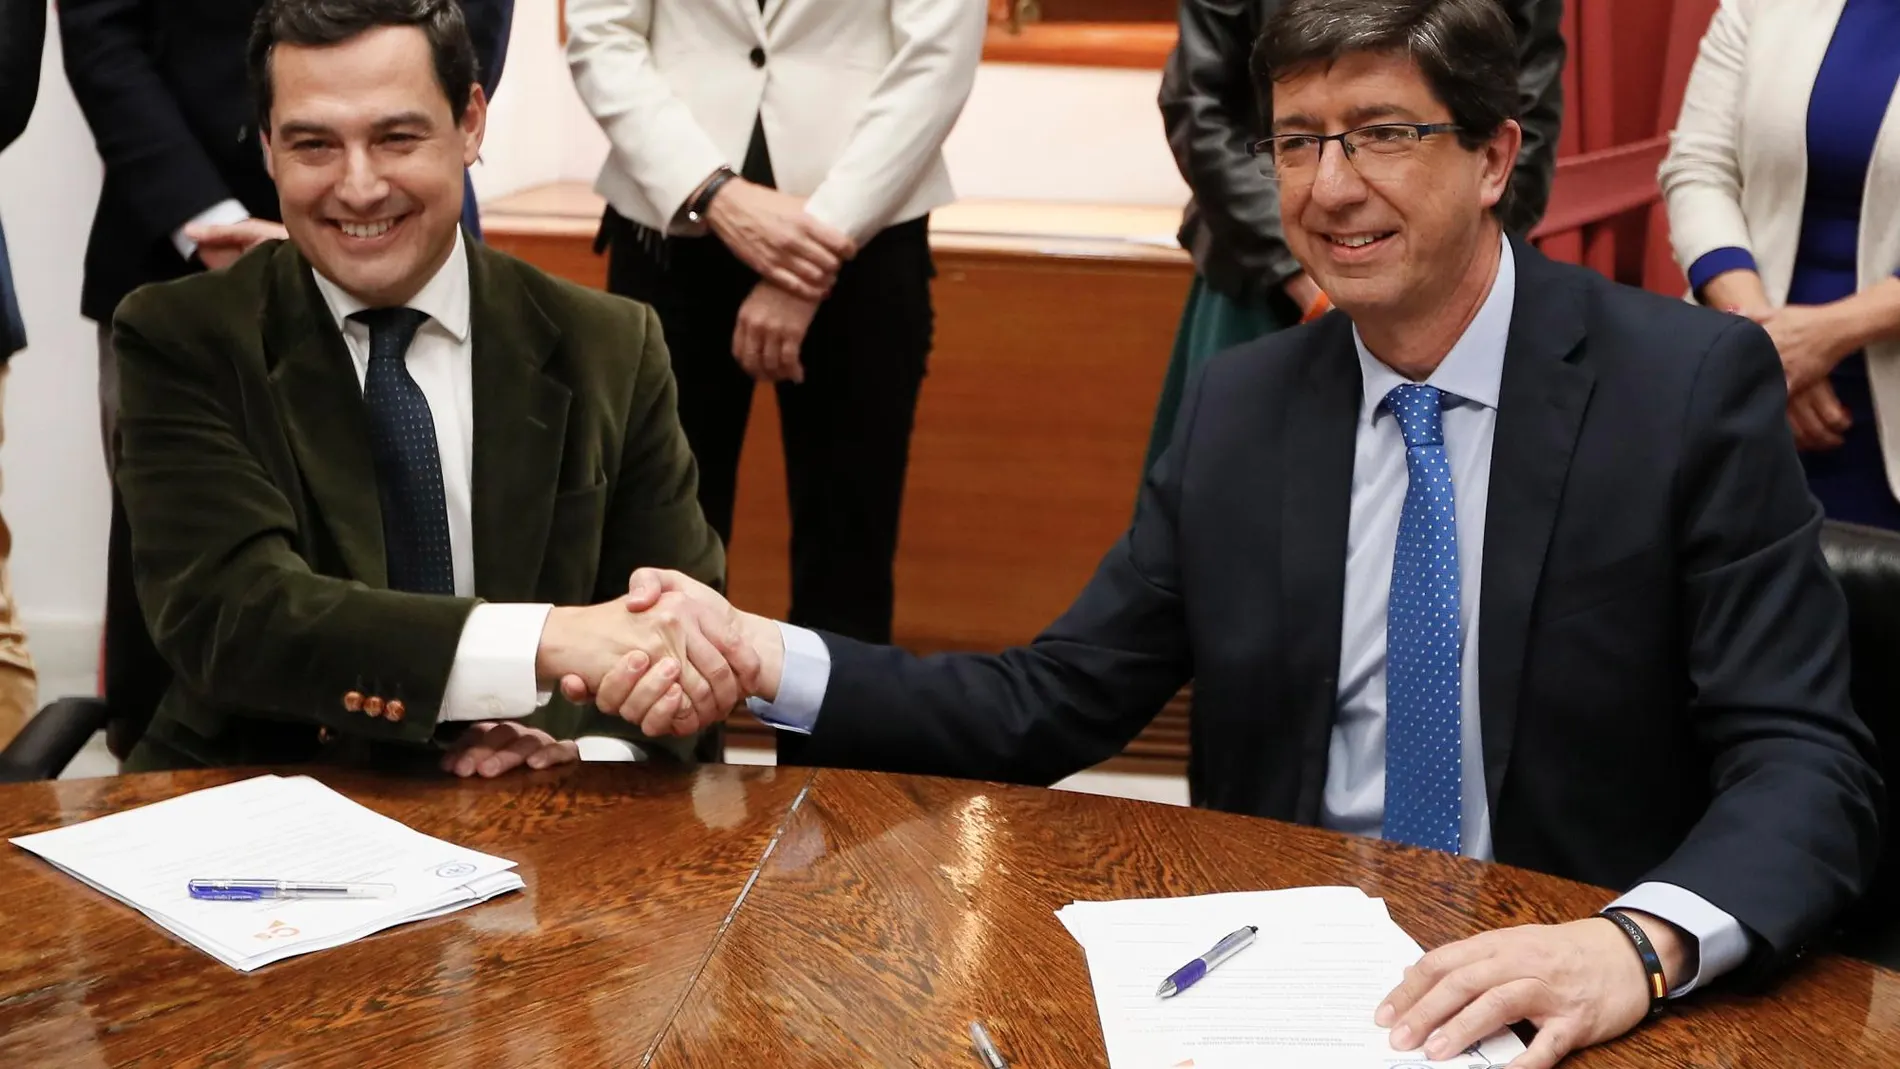 Juanma Moreno y Juan Marín estrechan las manos durante la reunión que han tenido esta tarde en el Parlamento de Andalucía para sellar su acuerdo de gobierno. EFE/Jose Manuel Vidal.